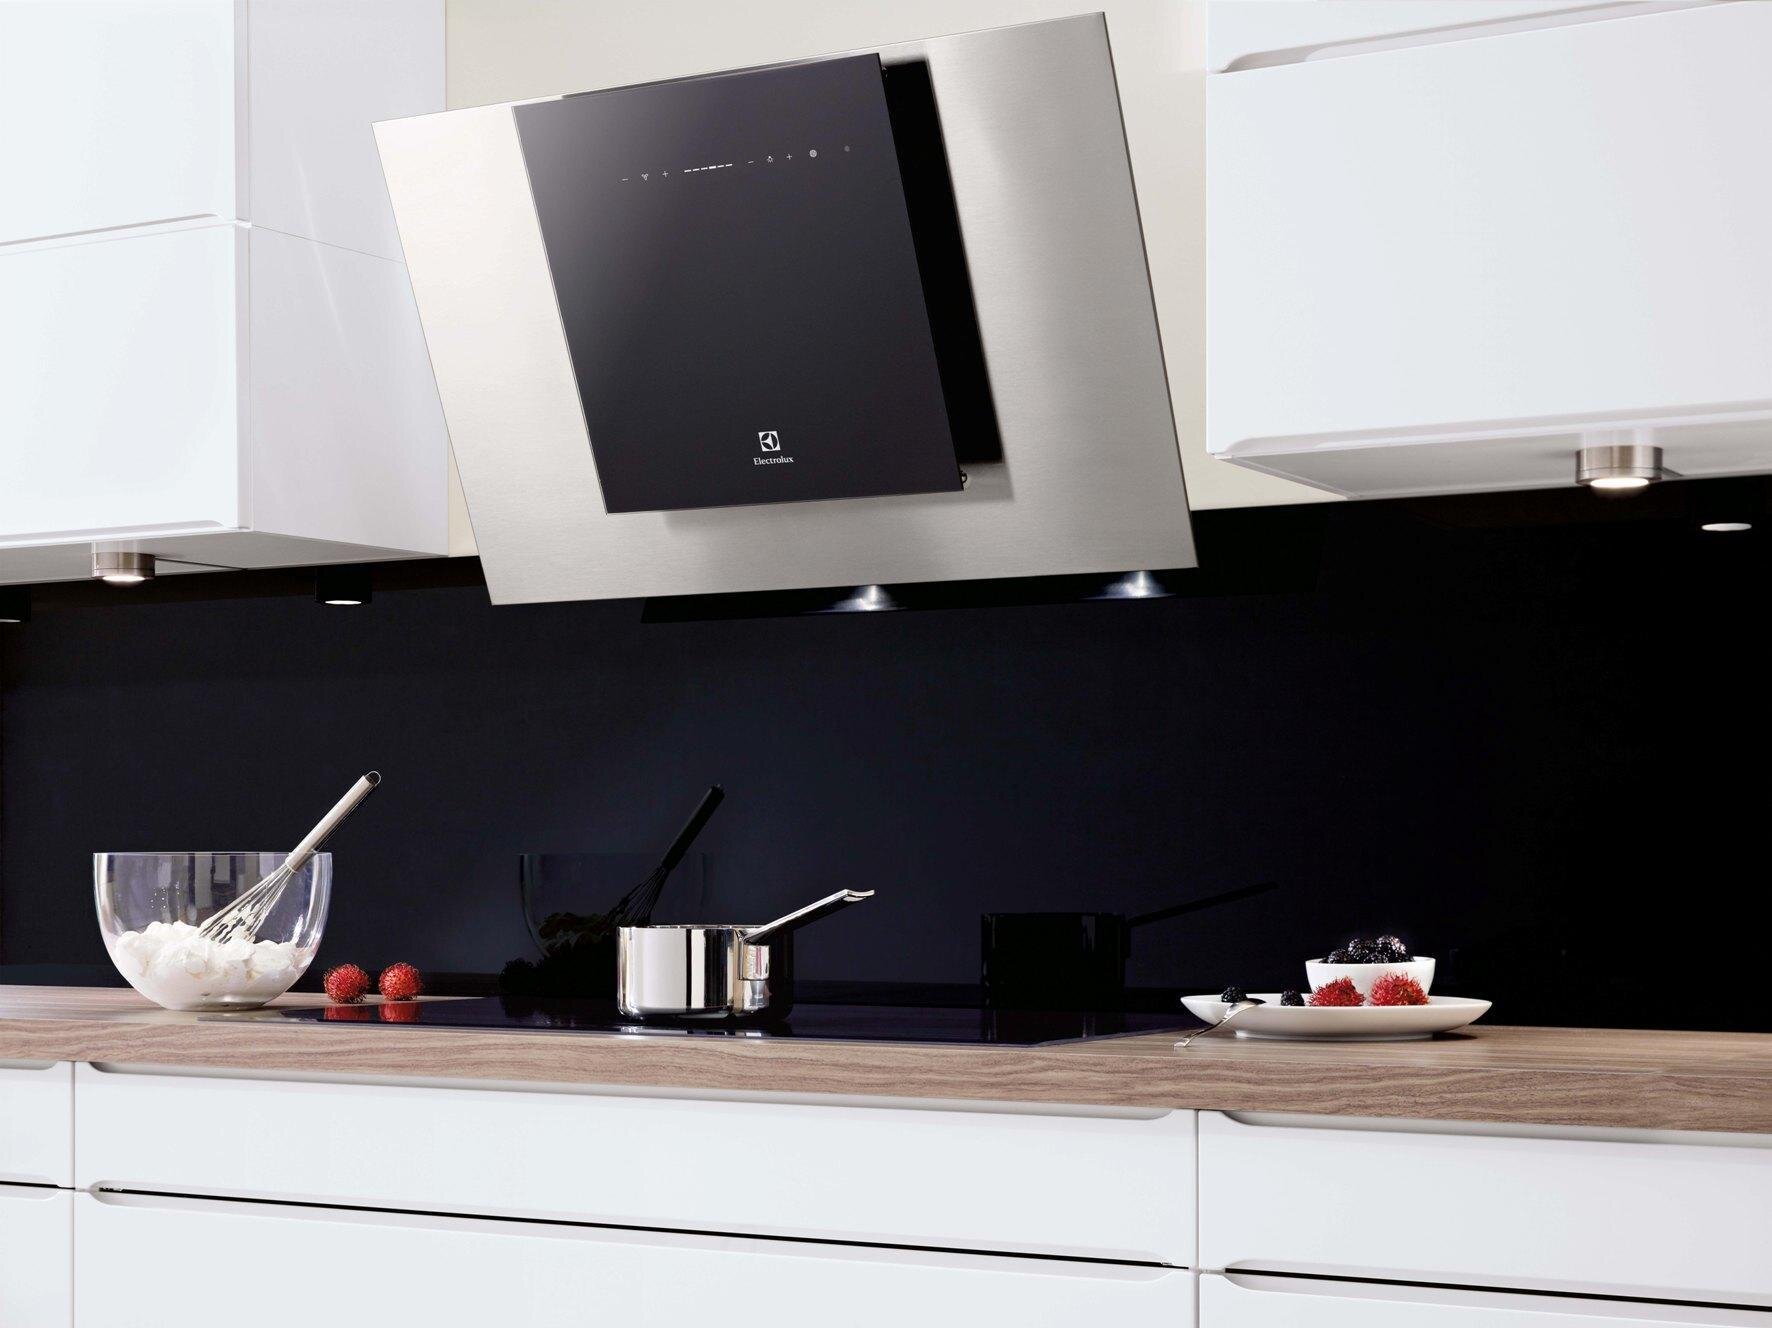 Electrolux EFT7516: Electrolux EFT7516 là một sản phẩm chất lượng cao, được thiết kế thông minh và sang trọng. Với hàng loạt tính năng hiện đại, máy hút mùi này mang đến khả năng làm sạch không khí tốt nhất cho căn bếp của bạn.